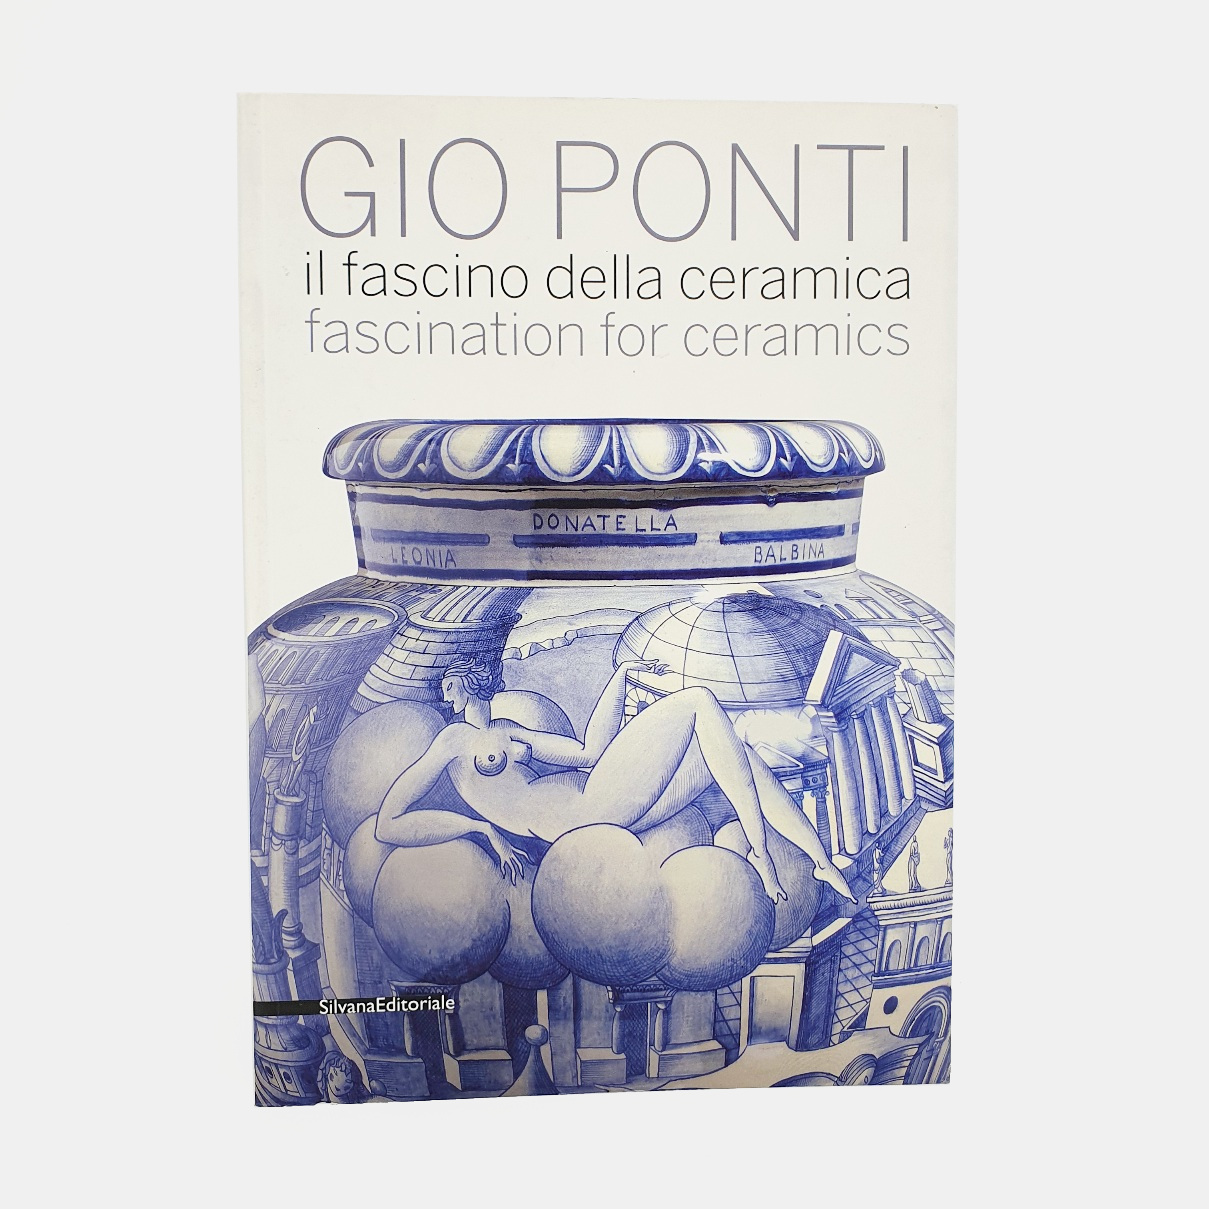 Gio Ponti. Il fascino della ceramica. Fascination for ceramics - Gio Ponti. Edited by Dario Matteoni.